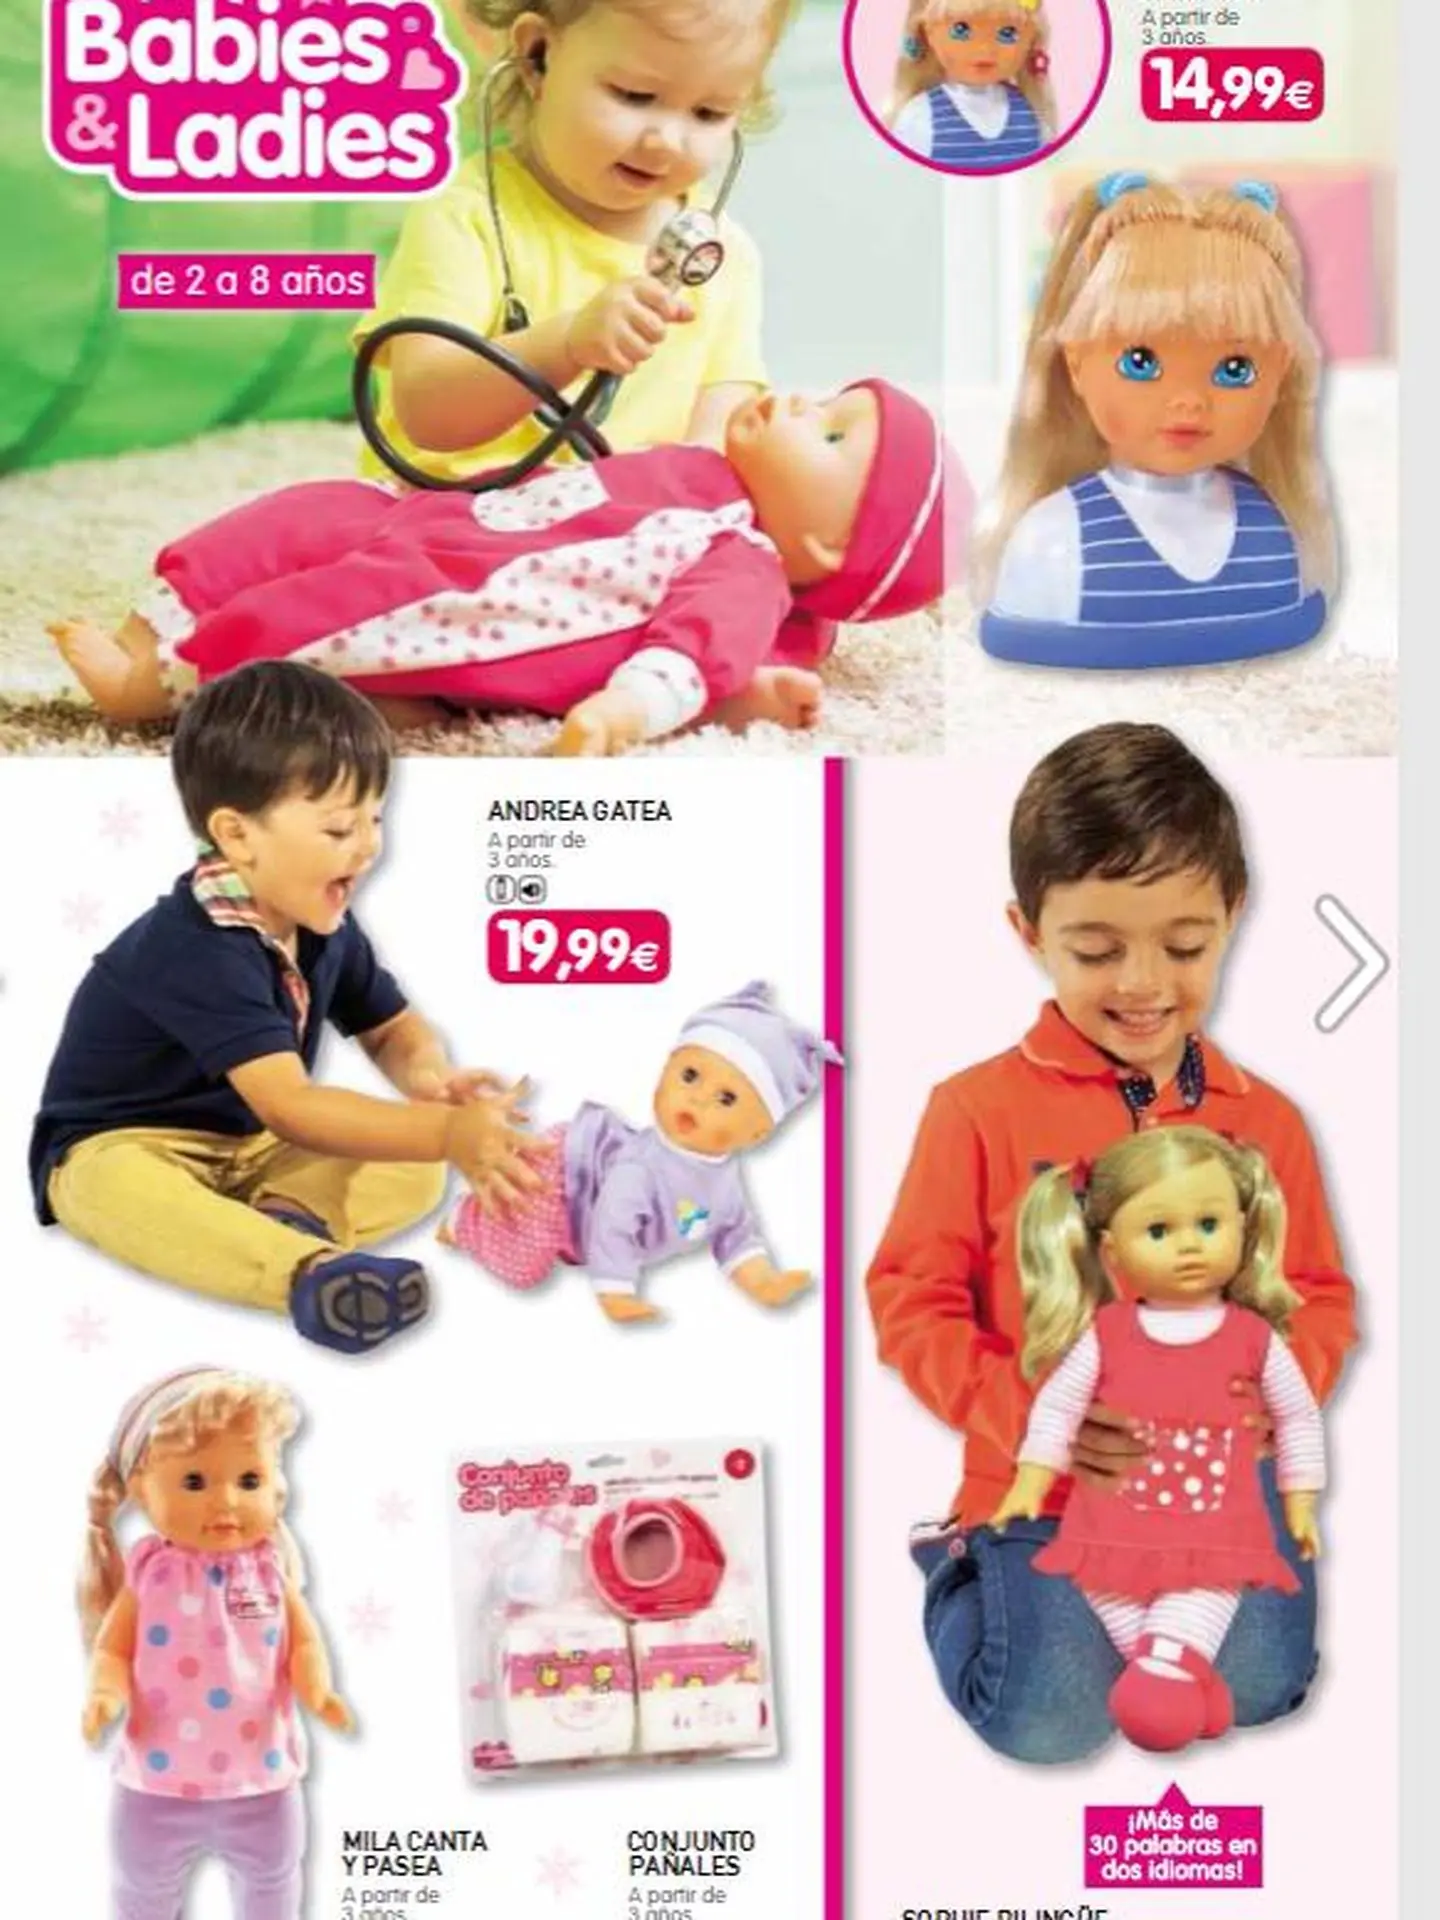 mi hija no juega con muñecas - Cuándo empiezan los niños a jugar con muñecas